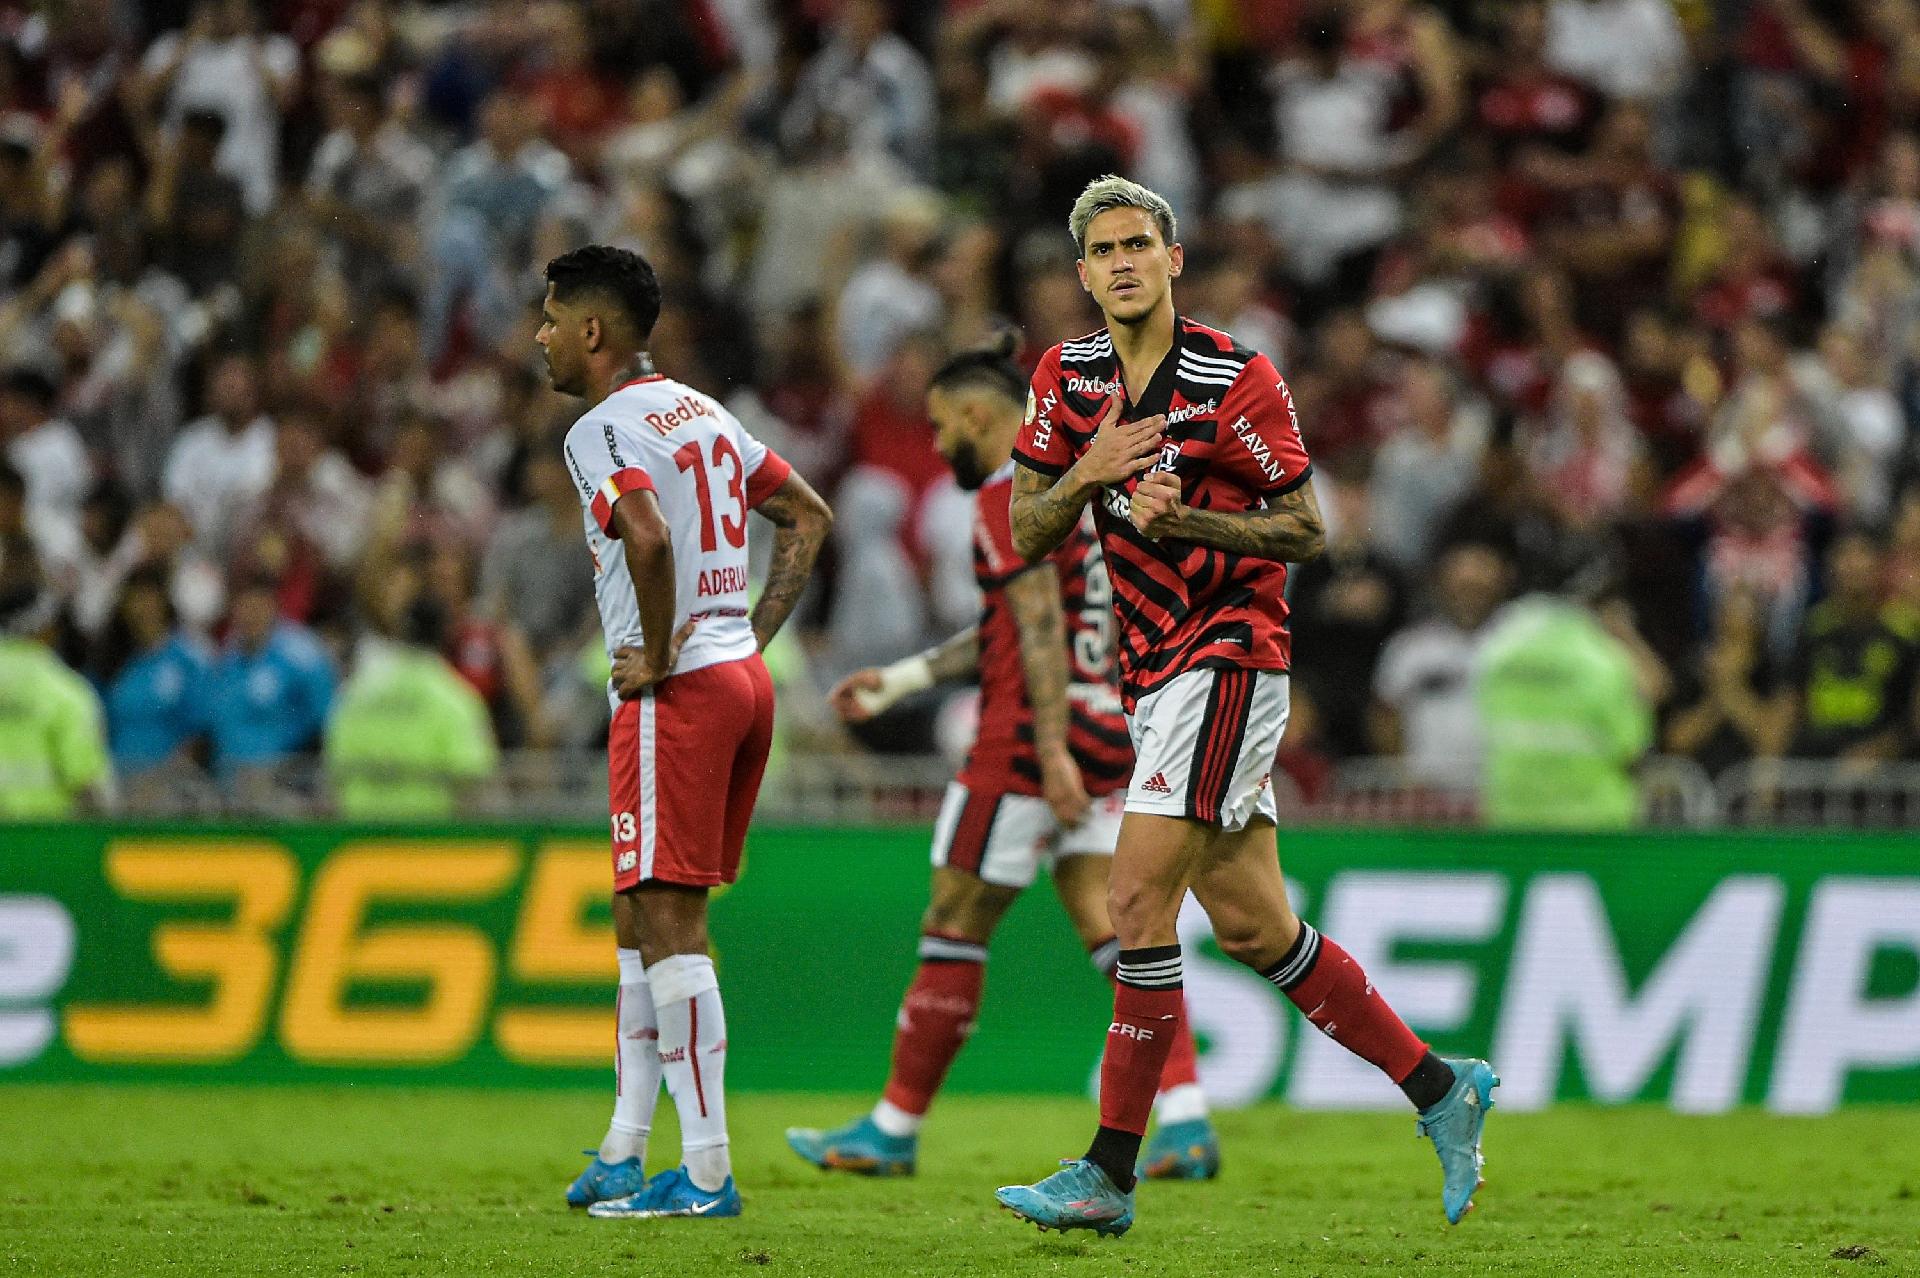 Veja como foi a transmissão da Jovem Pan do jogo entre Red Bull Bragantino  e Flamengo